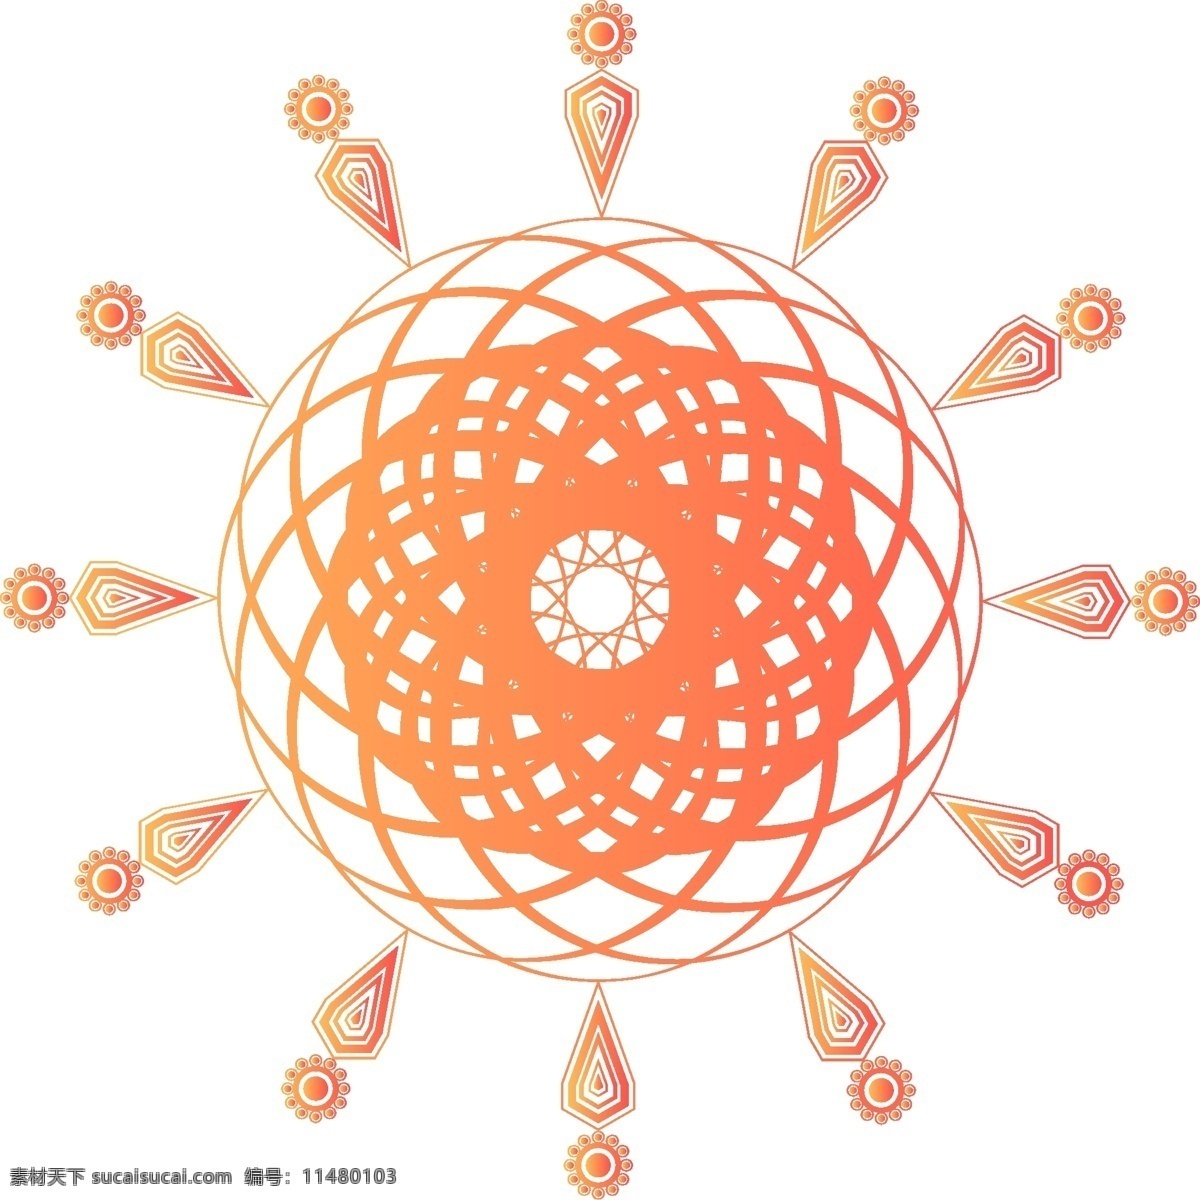 原创 珊瑚 橘 矢量 几何 万花筒 旋转 渐变 元素 炫彩 设计元素 装饰 珊瑚橘 可商用